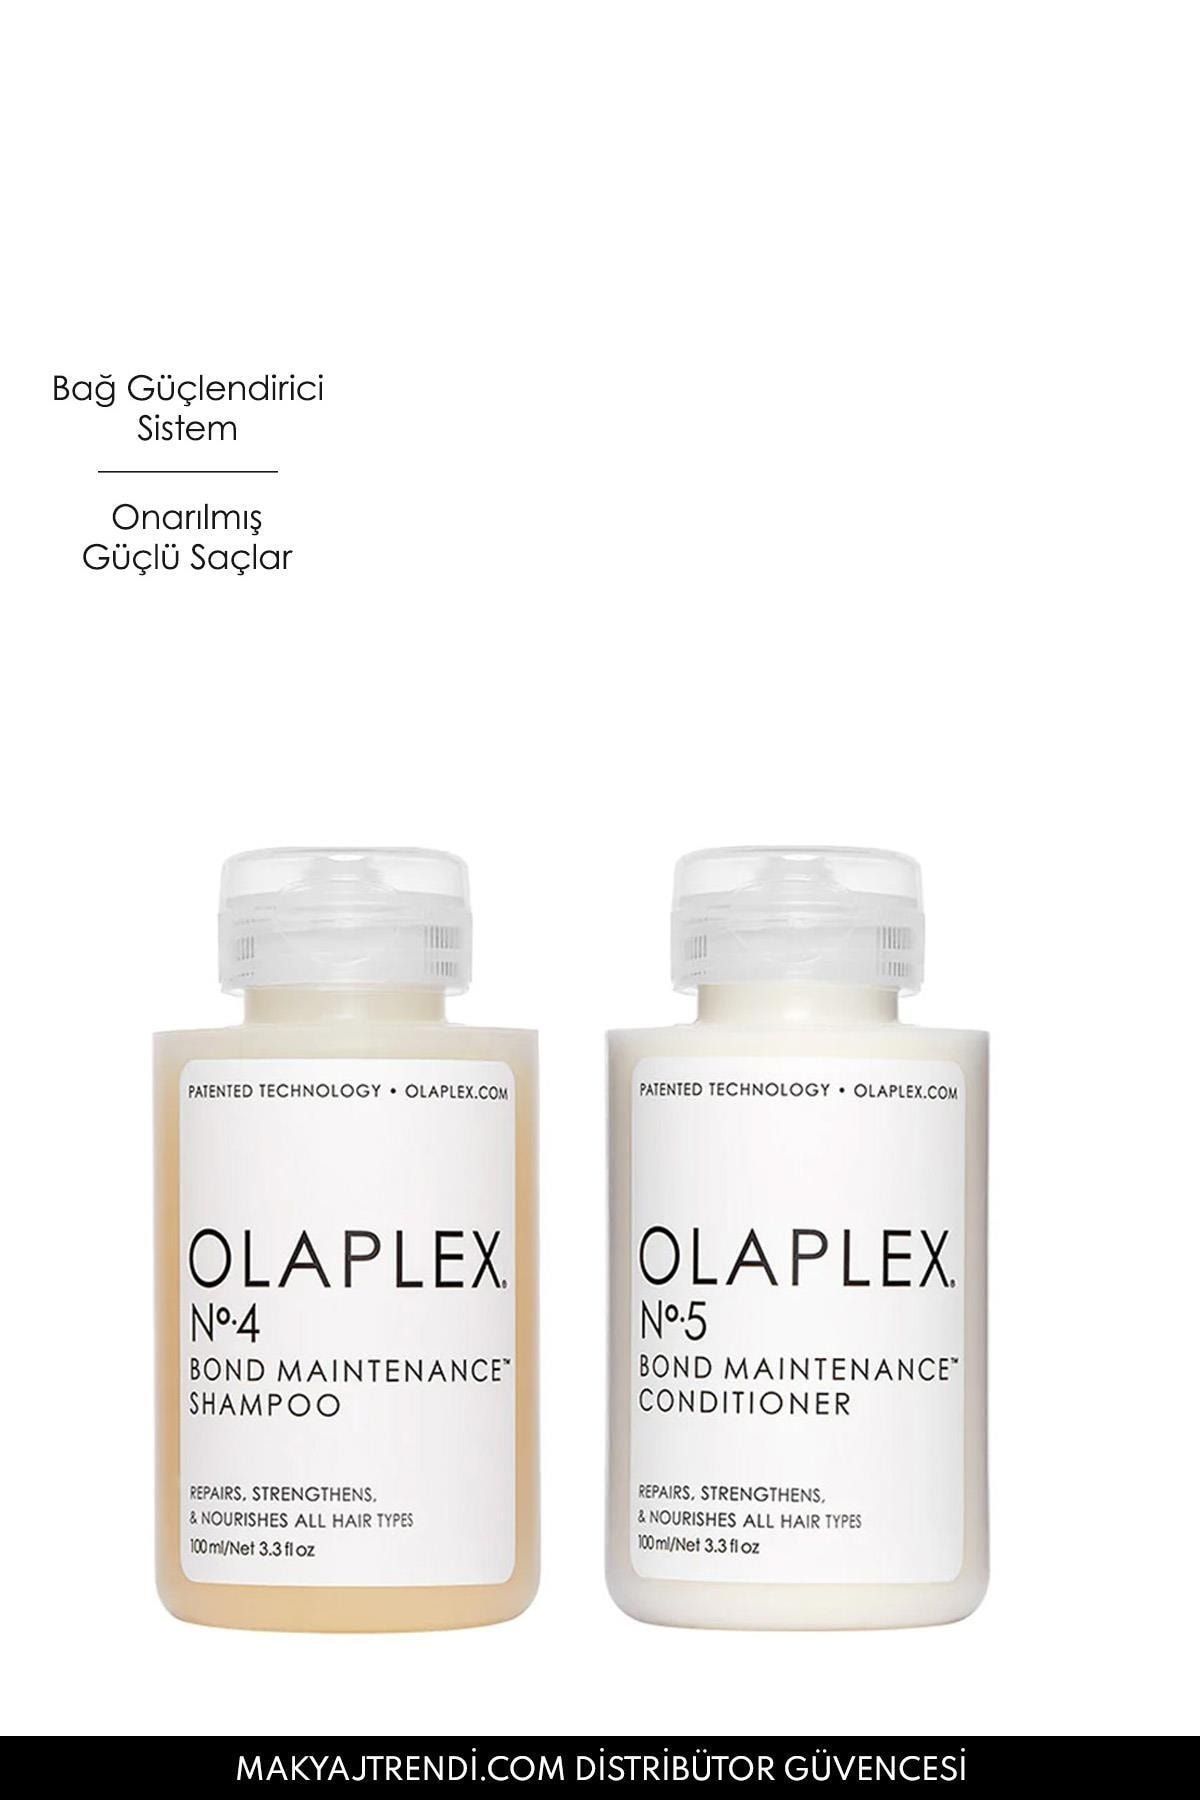 Olaplex Daily Cleanse Condition Travel Duo Saçları Temizleyen Nemlendiren  Onaran Bağ Güçlendirici Set